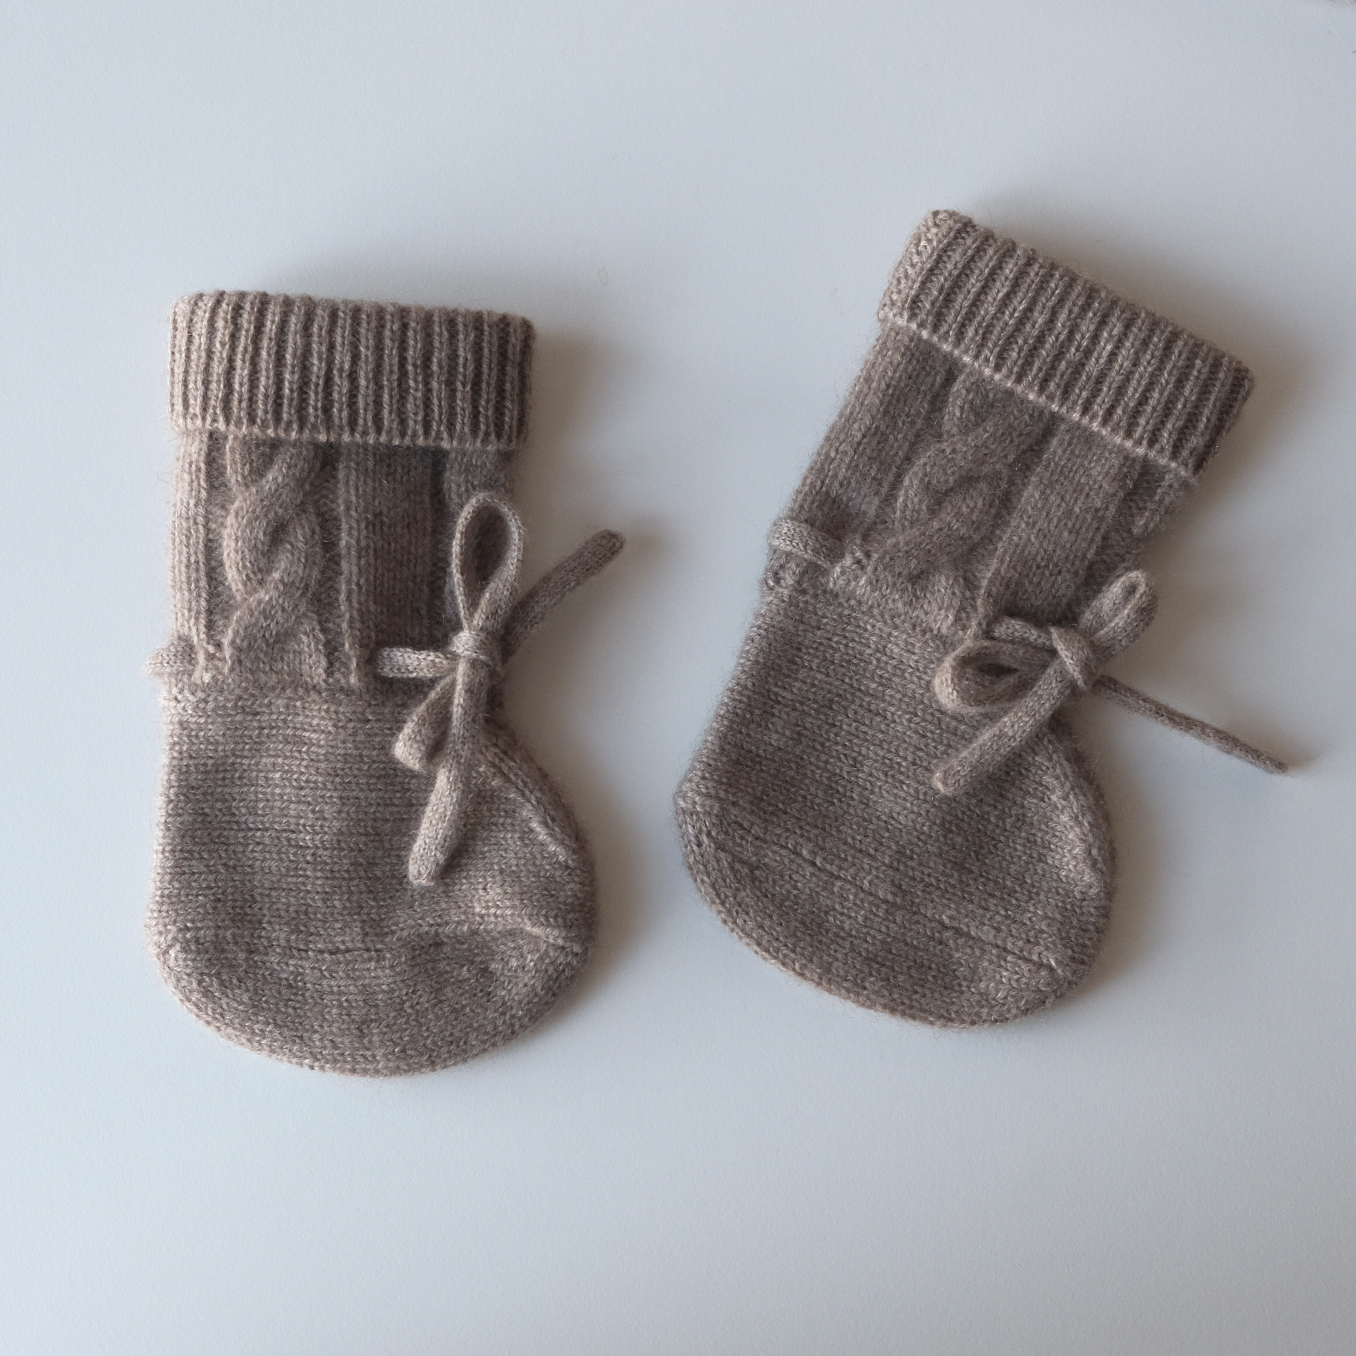 minibaby240422A Newborn Baby Cashmere Gift Set